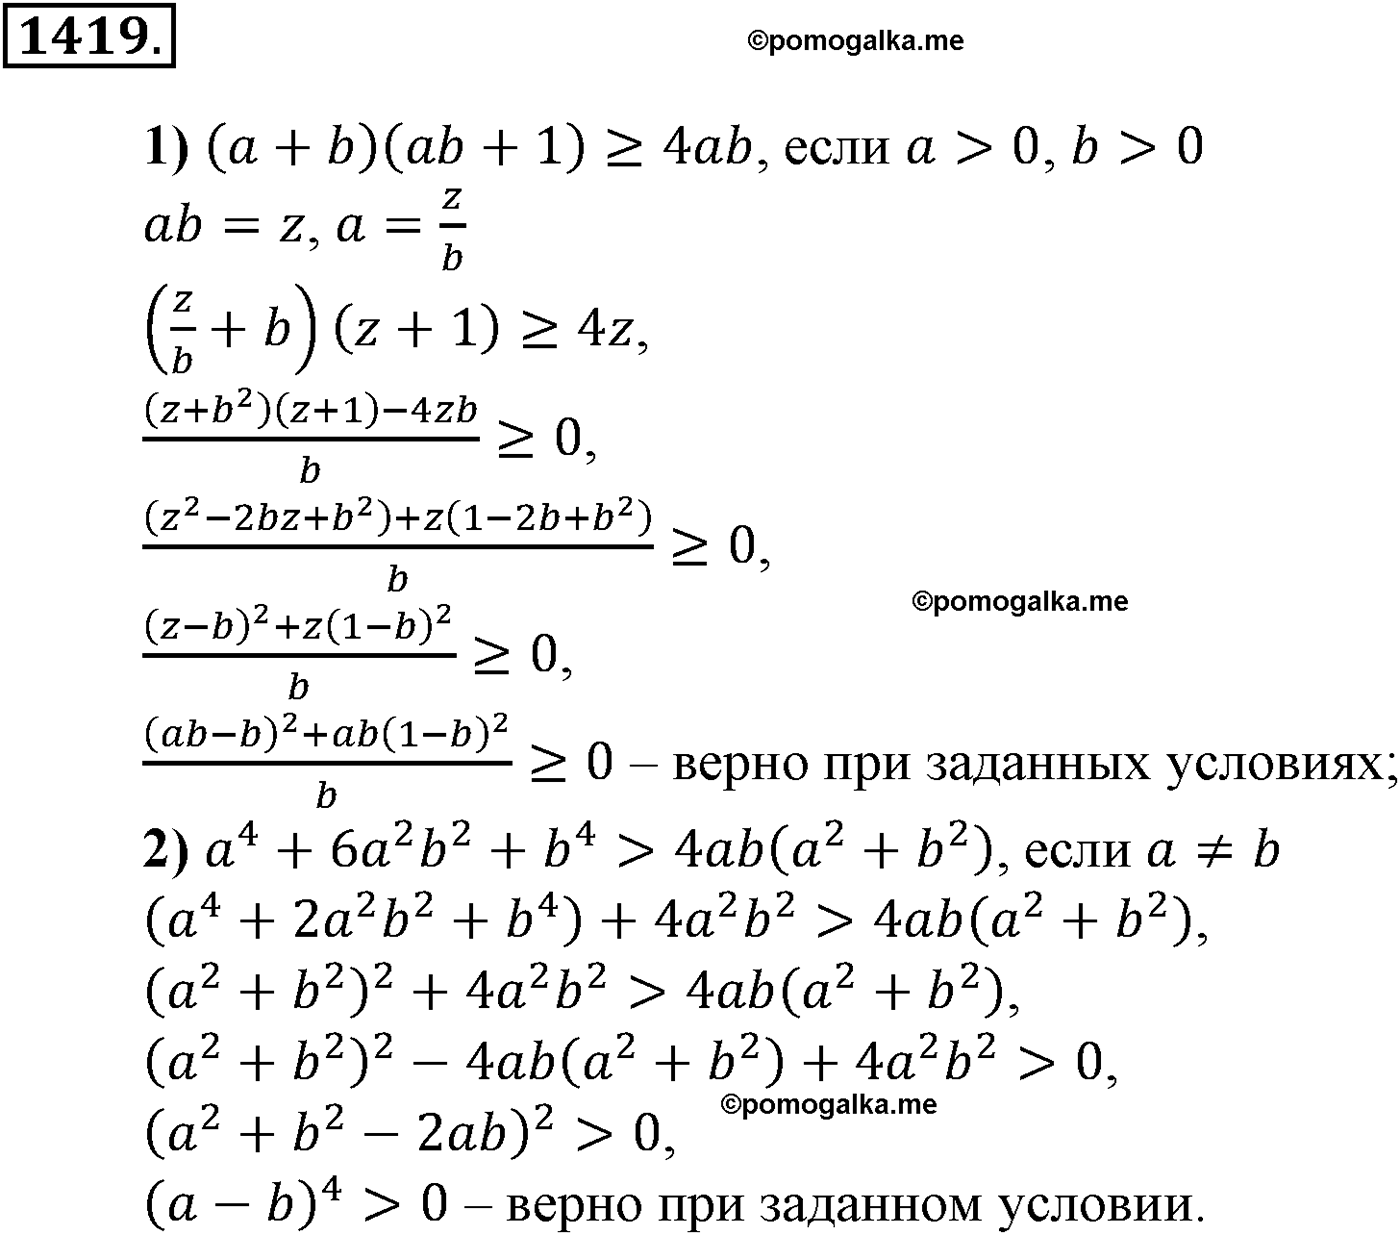 разбор задачи №1419 по алгебре за 10-11 класс из учебника Алимова, Колягина